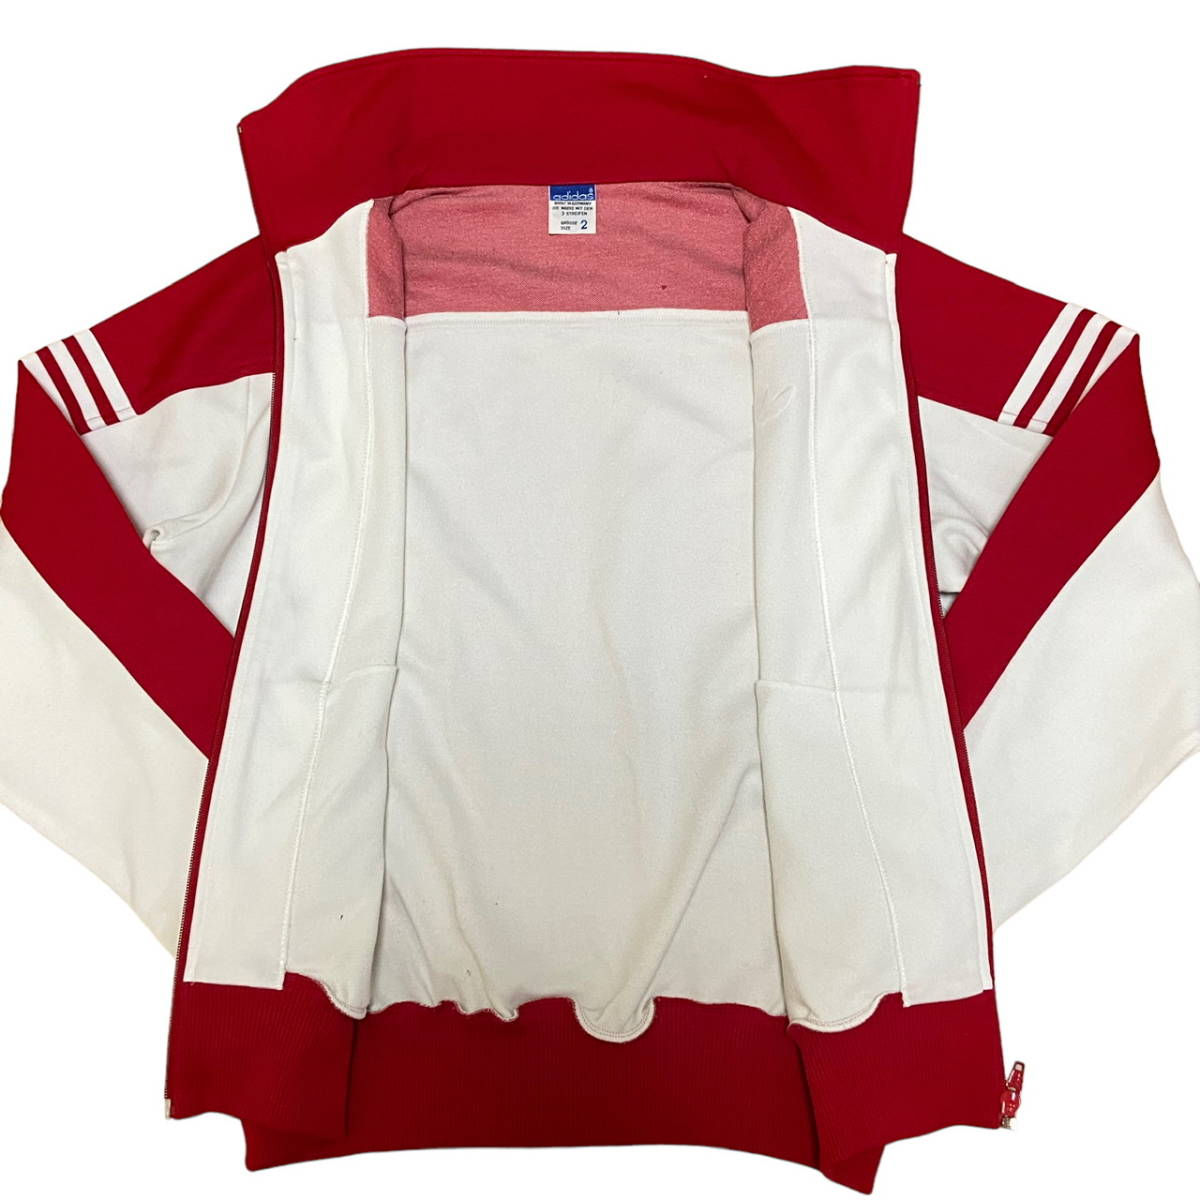 70s 80s adidas Descente производства запад Германия спортивная куртка 2 красный × белый джерси Adidas Parker DESCENTE редкость Vintage 